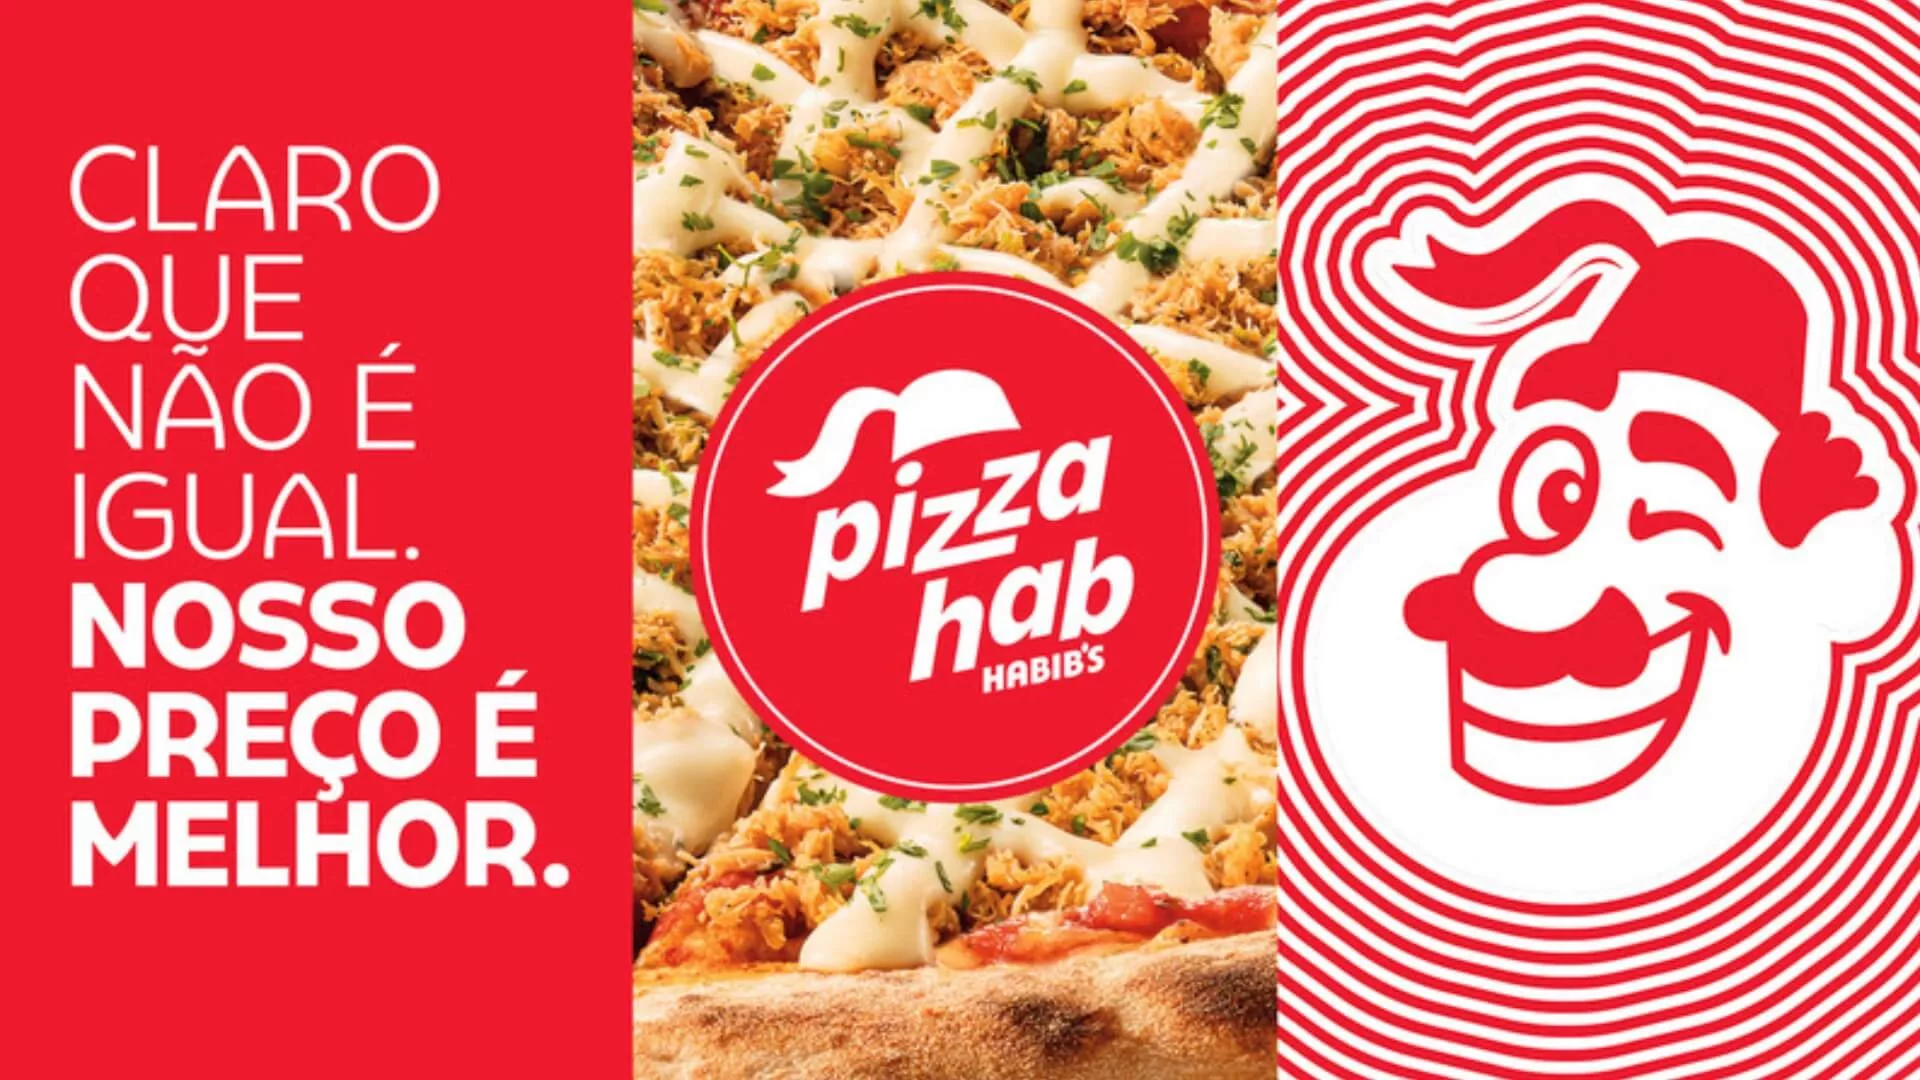 Habib’s cria pizzaria em 3 horas e provoca concorrência